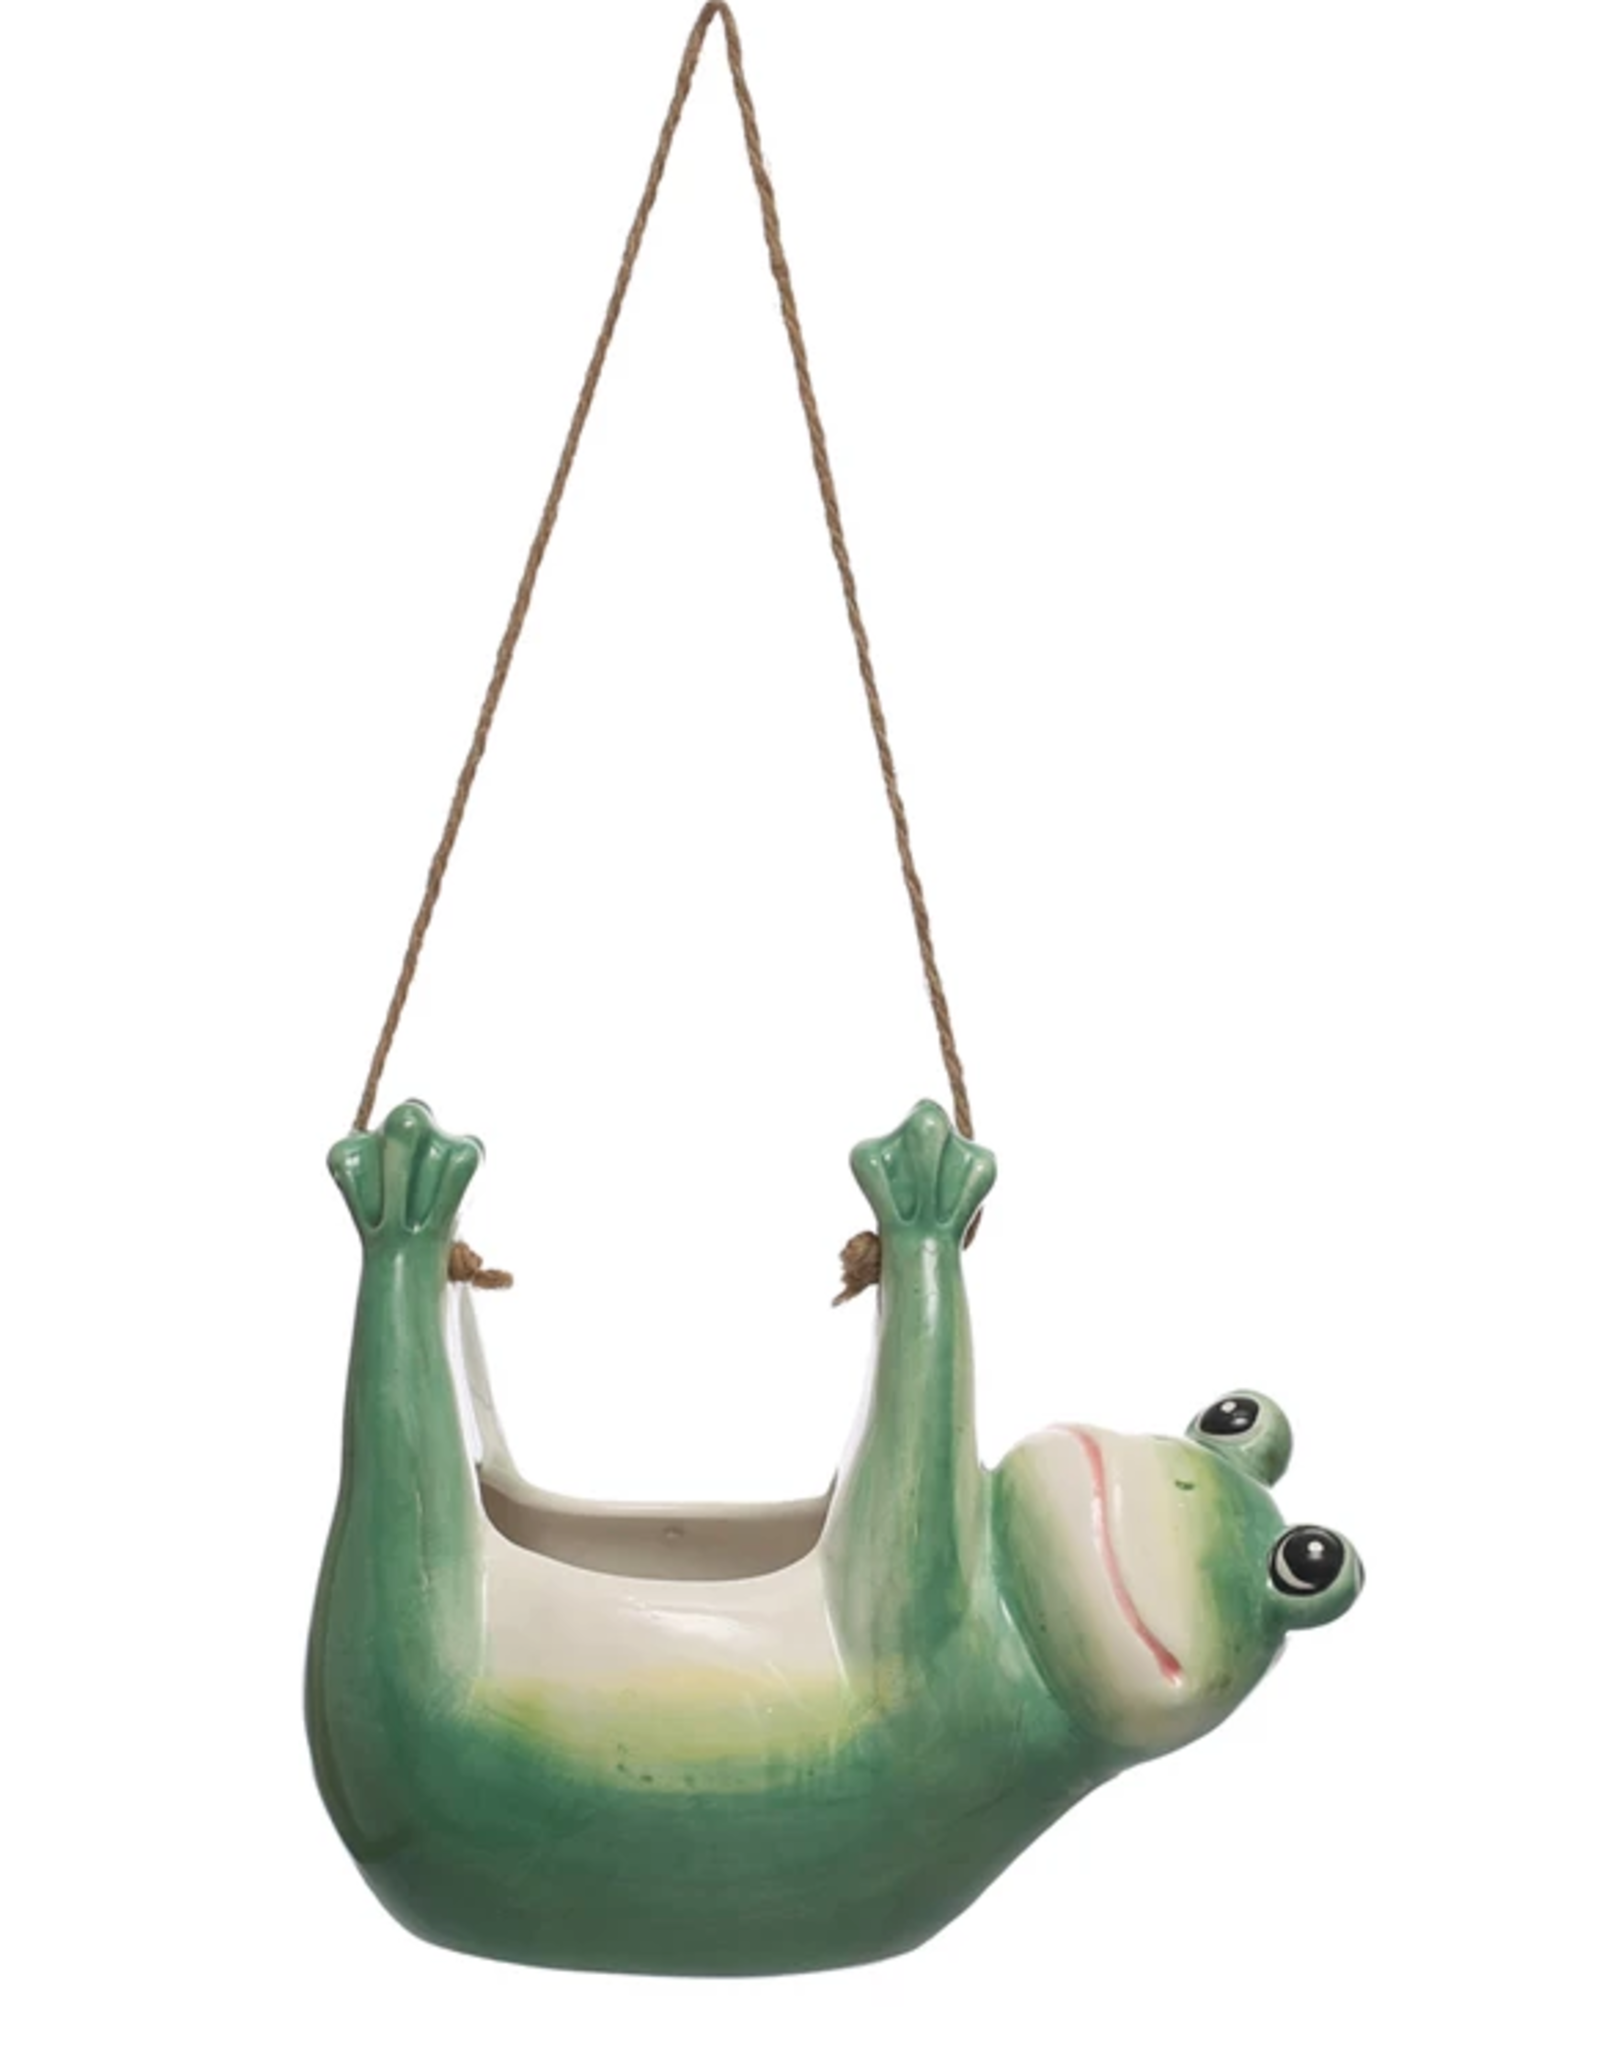 Hanging Ceramic Frog Planter w/ Jute Rope Hanger, Green & White